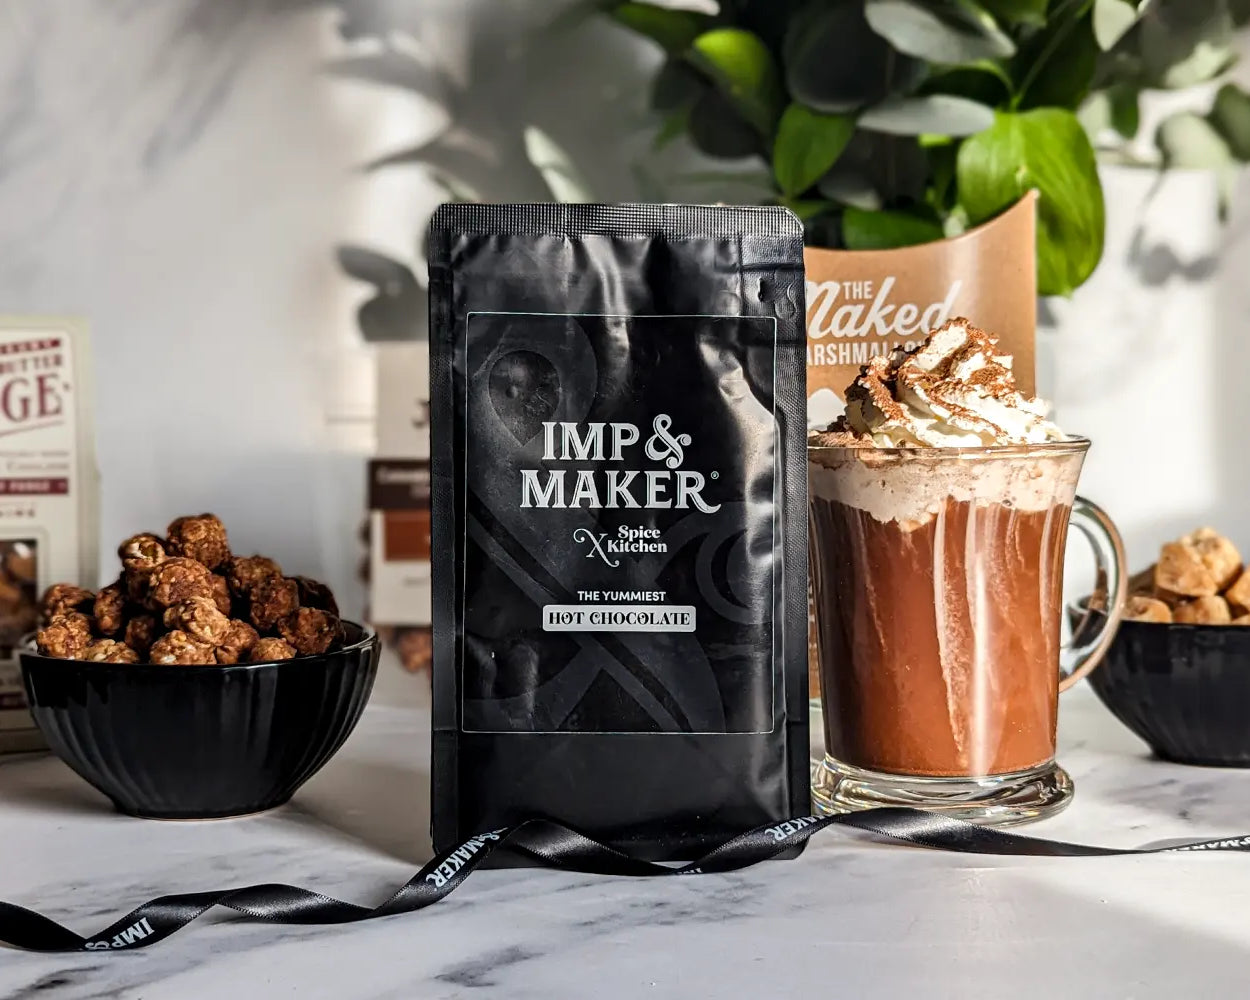 Boozy Hot Chocolate & Treats - IMP & MAKER